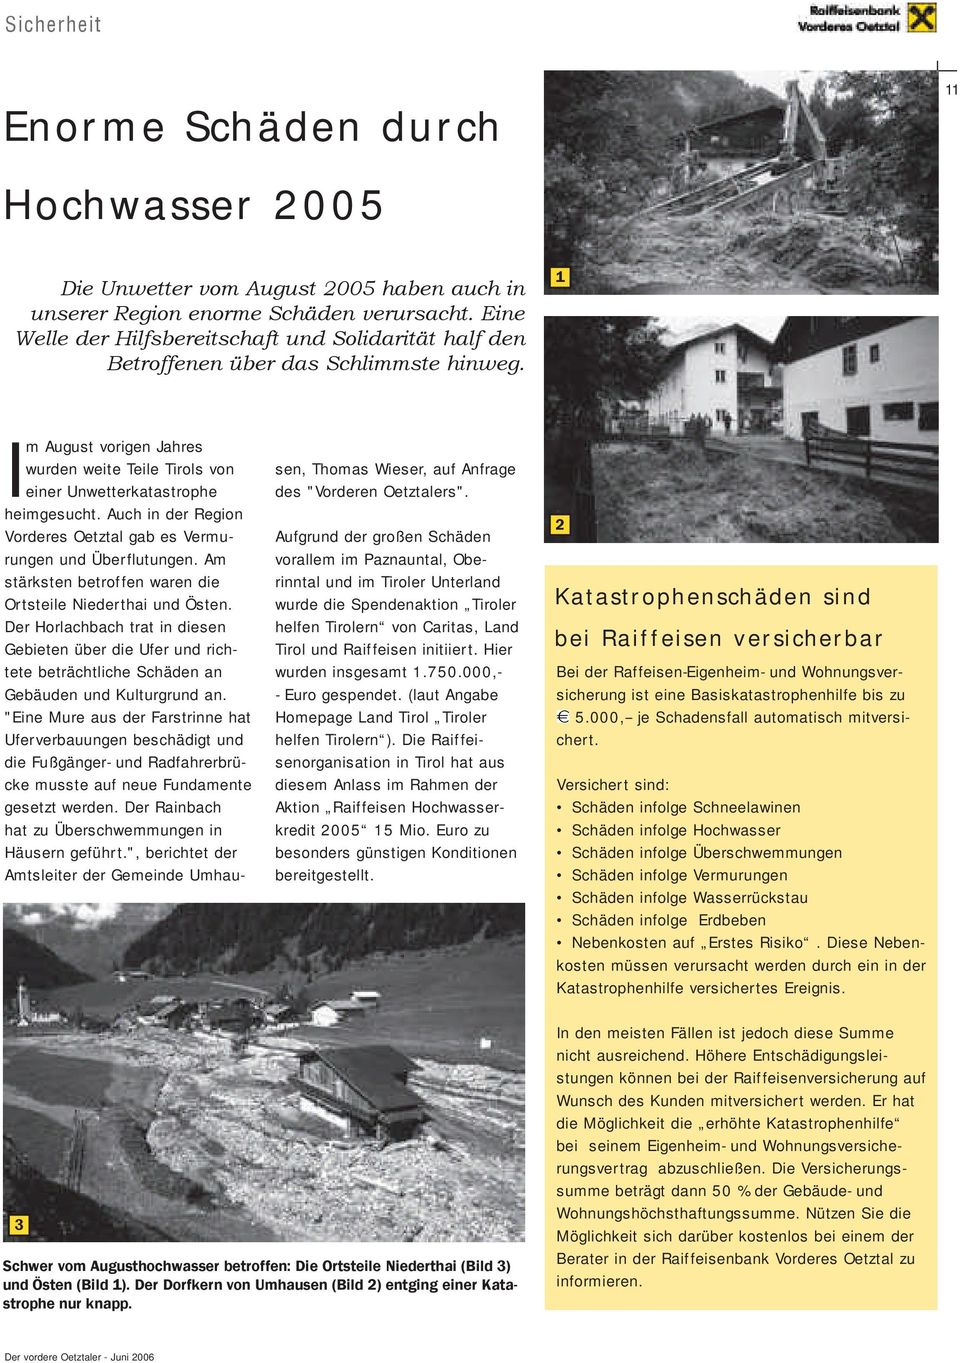 Auch in der Region Vorderes Oetztal gab es Vermurungen und Überflutungen. Am stärksten betroffen waren die Ortsteile Niederthai und Östen.